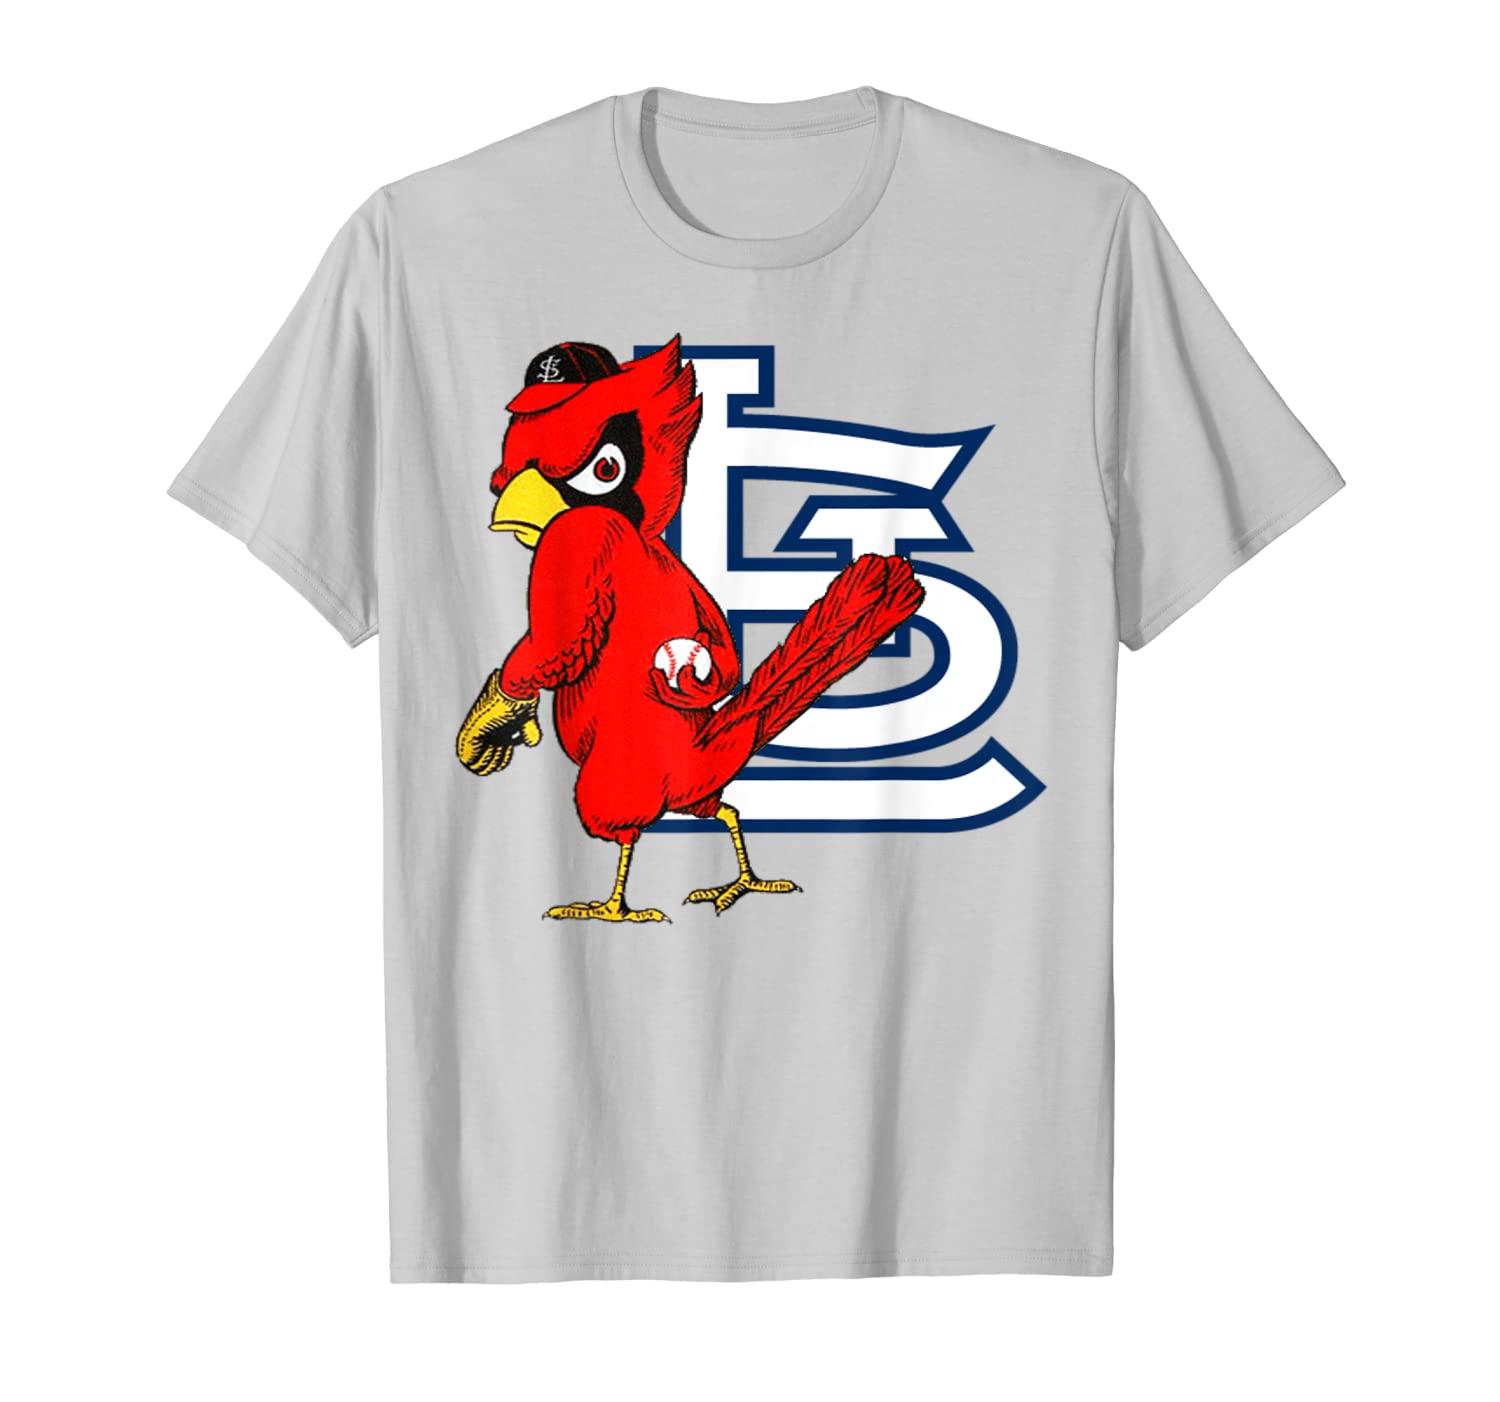 cardinals baseball t shirts